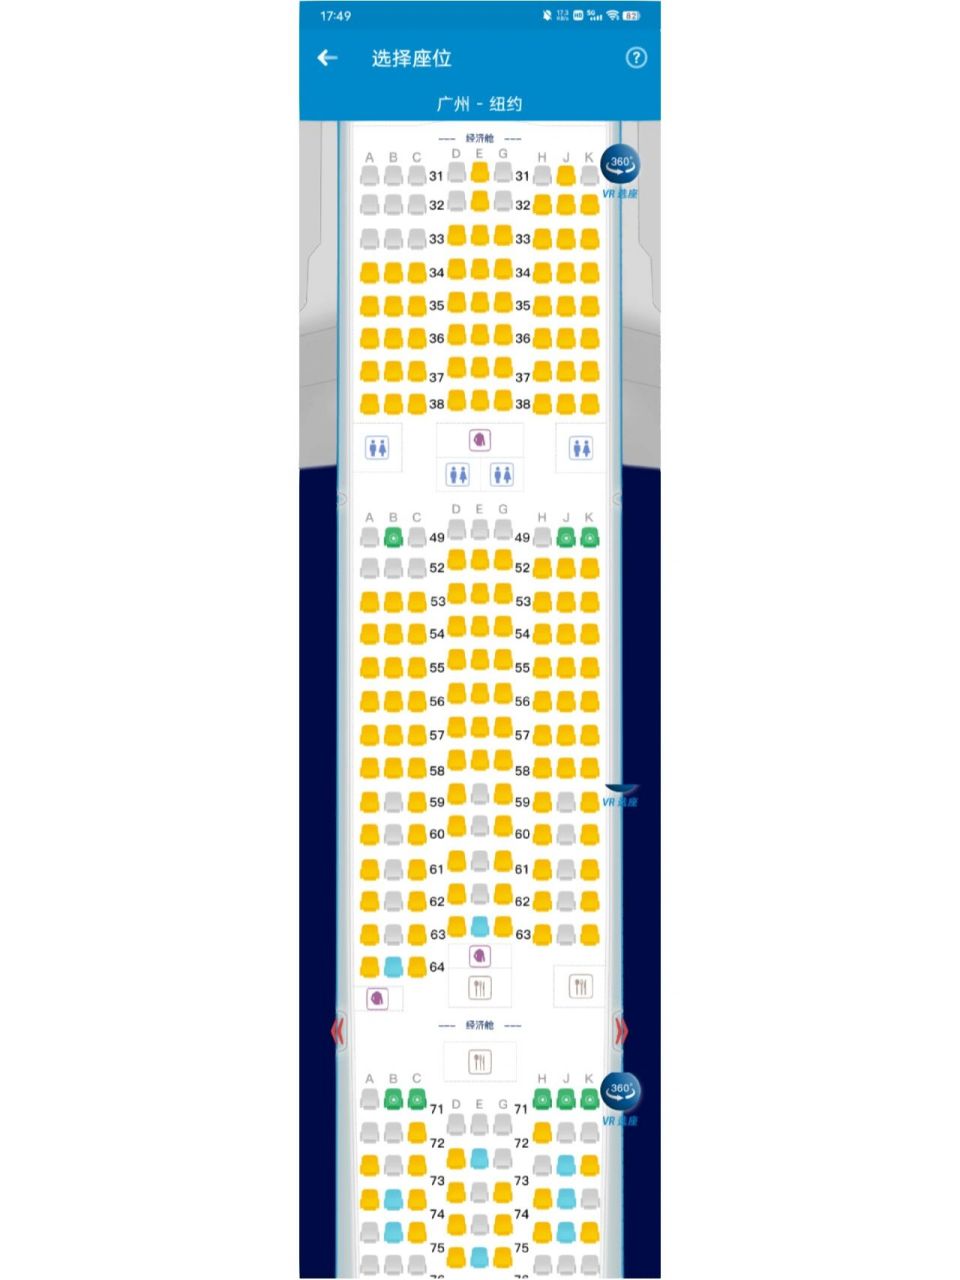 24排飞机座位图图片